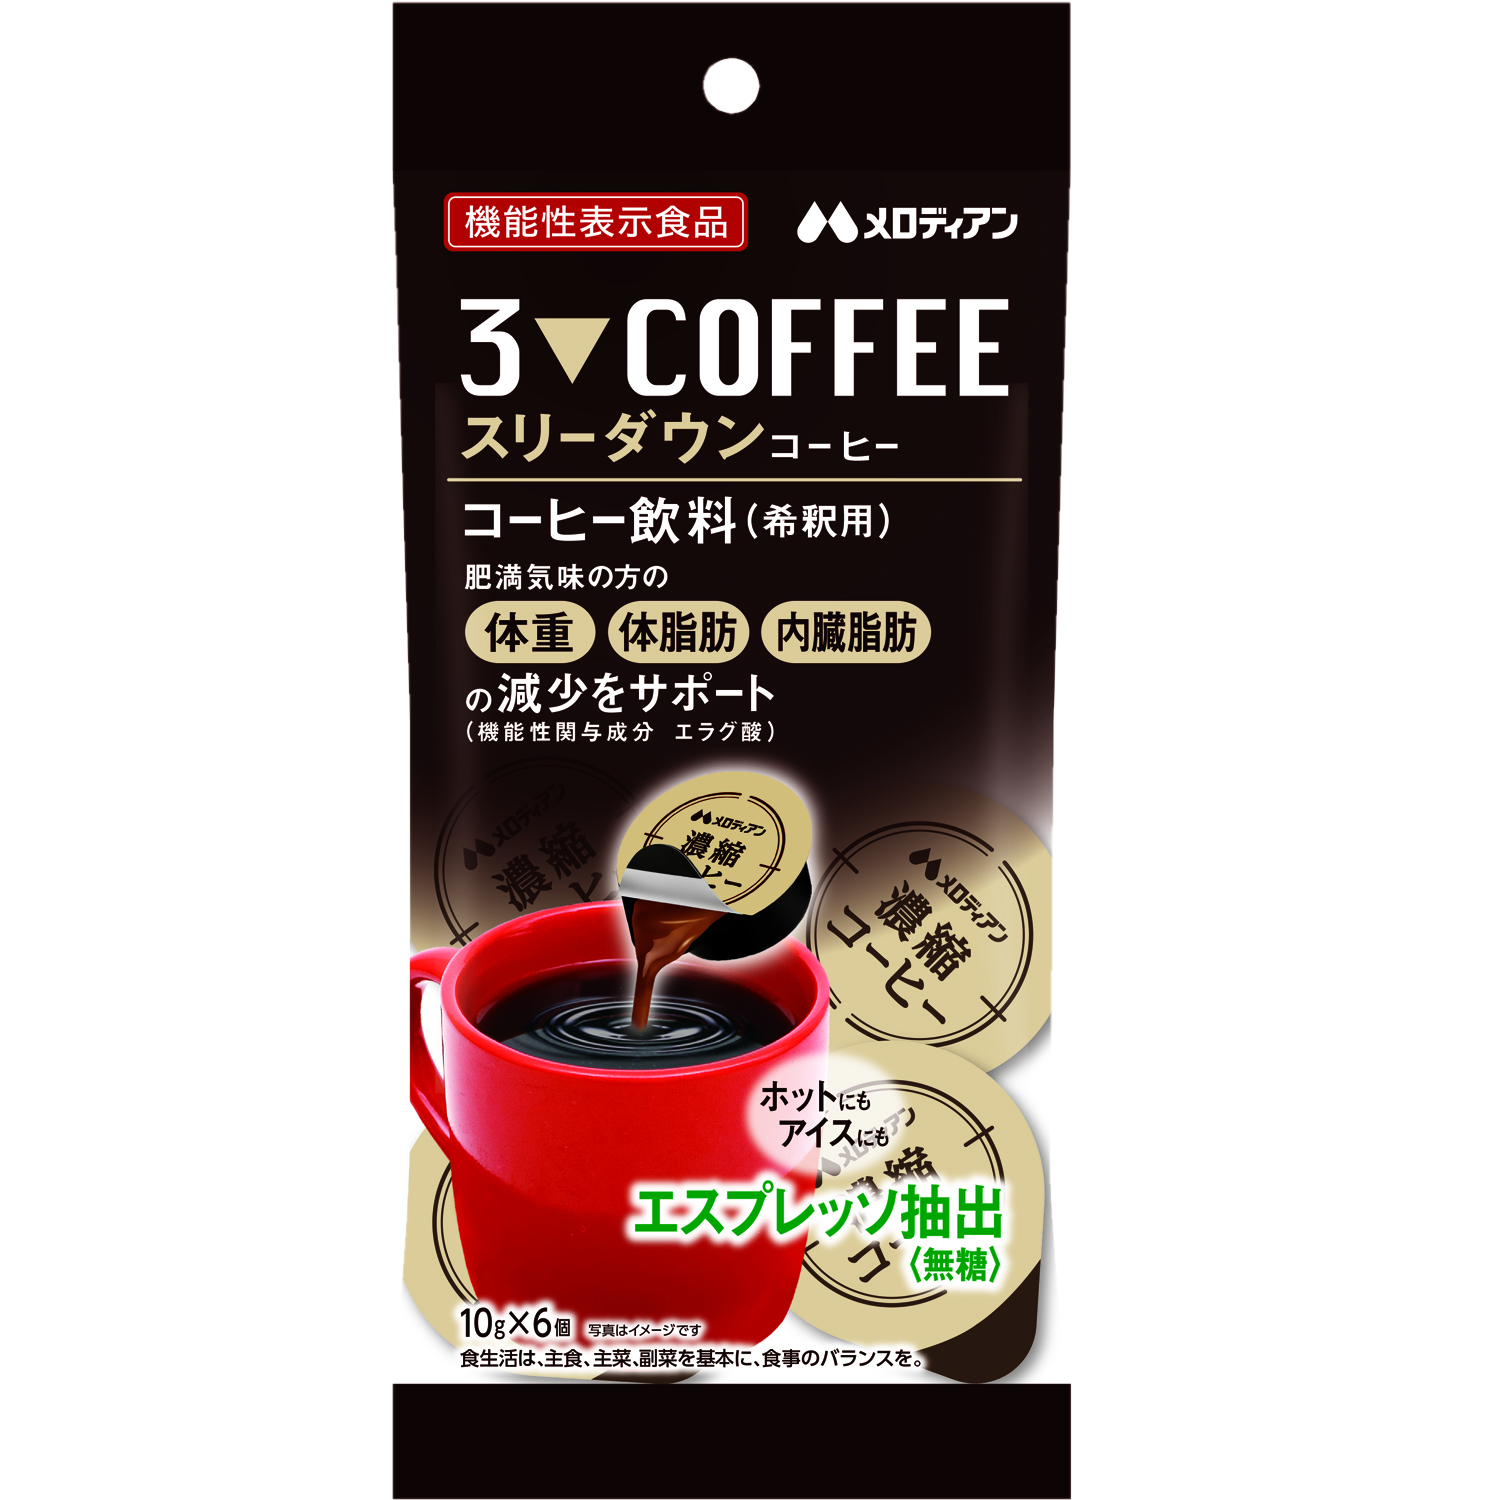 機能性表示食品　スリーダウンコーヒー10g×6個